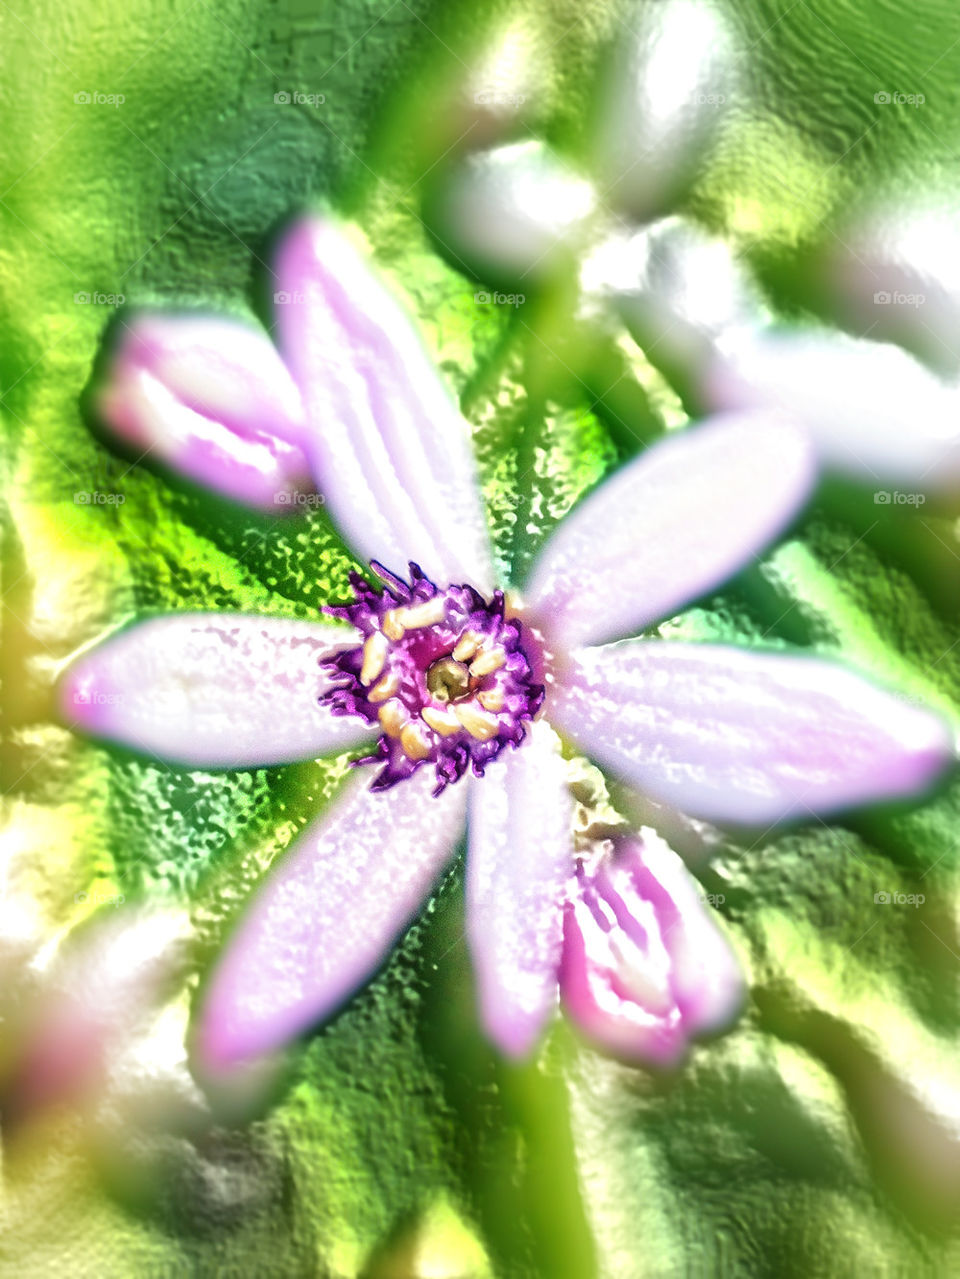 flower effect by blaqrayne